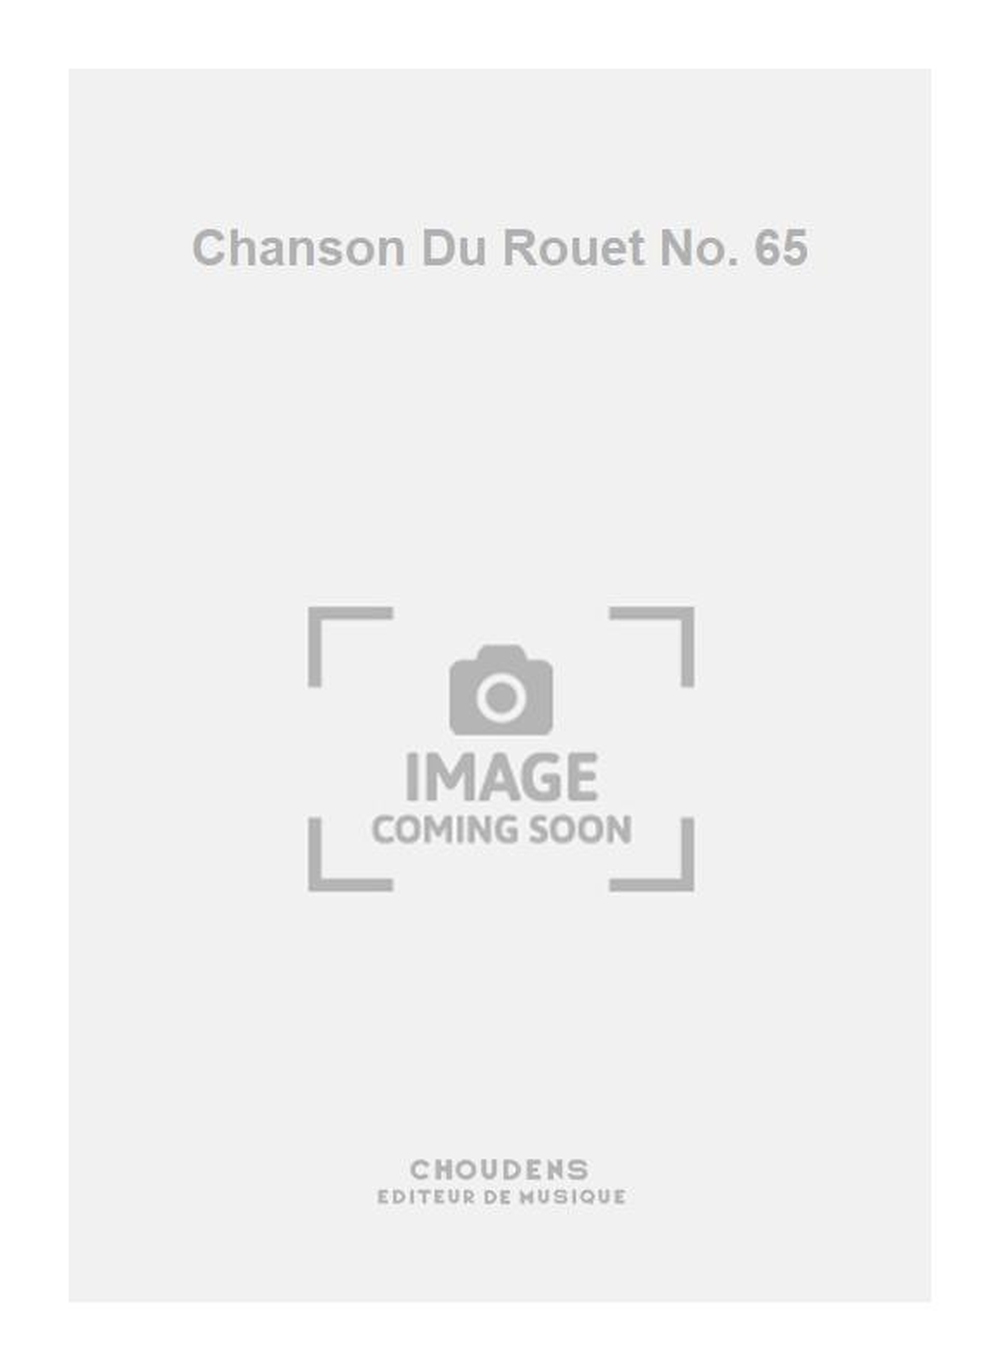 Chanson Du Rouet No. 65